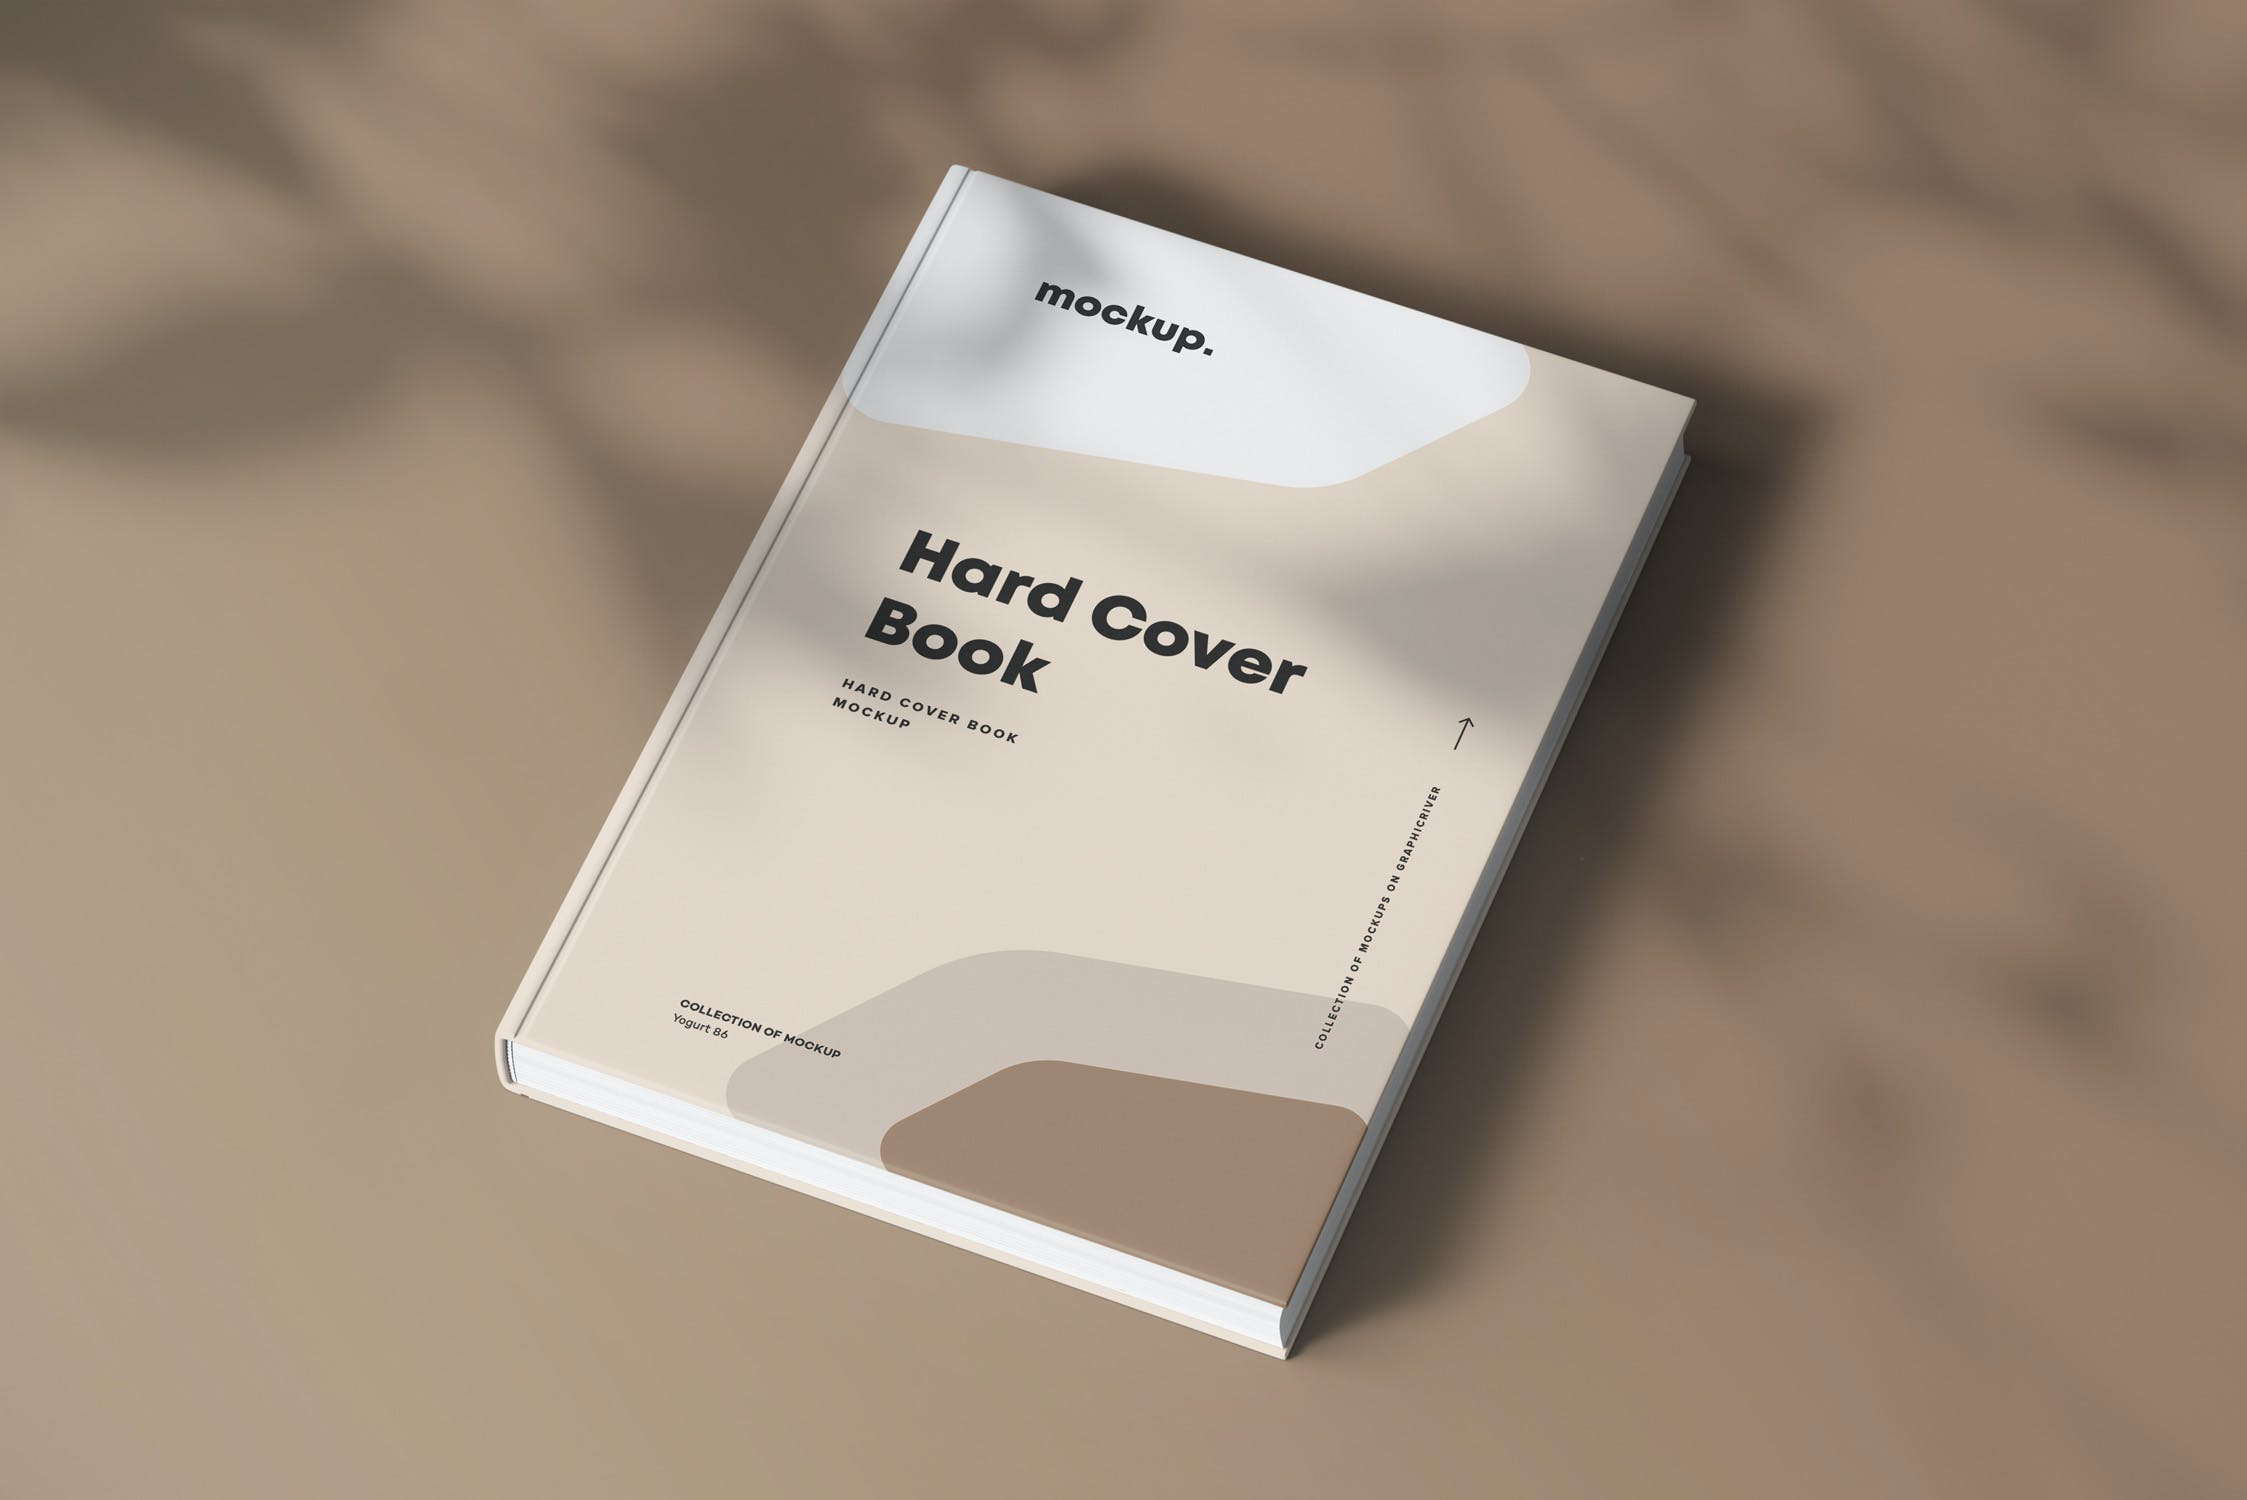 8款精装书封面设计展示贴图样机模板素材 Hard Cover Book Mock-up